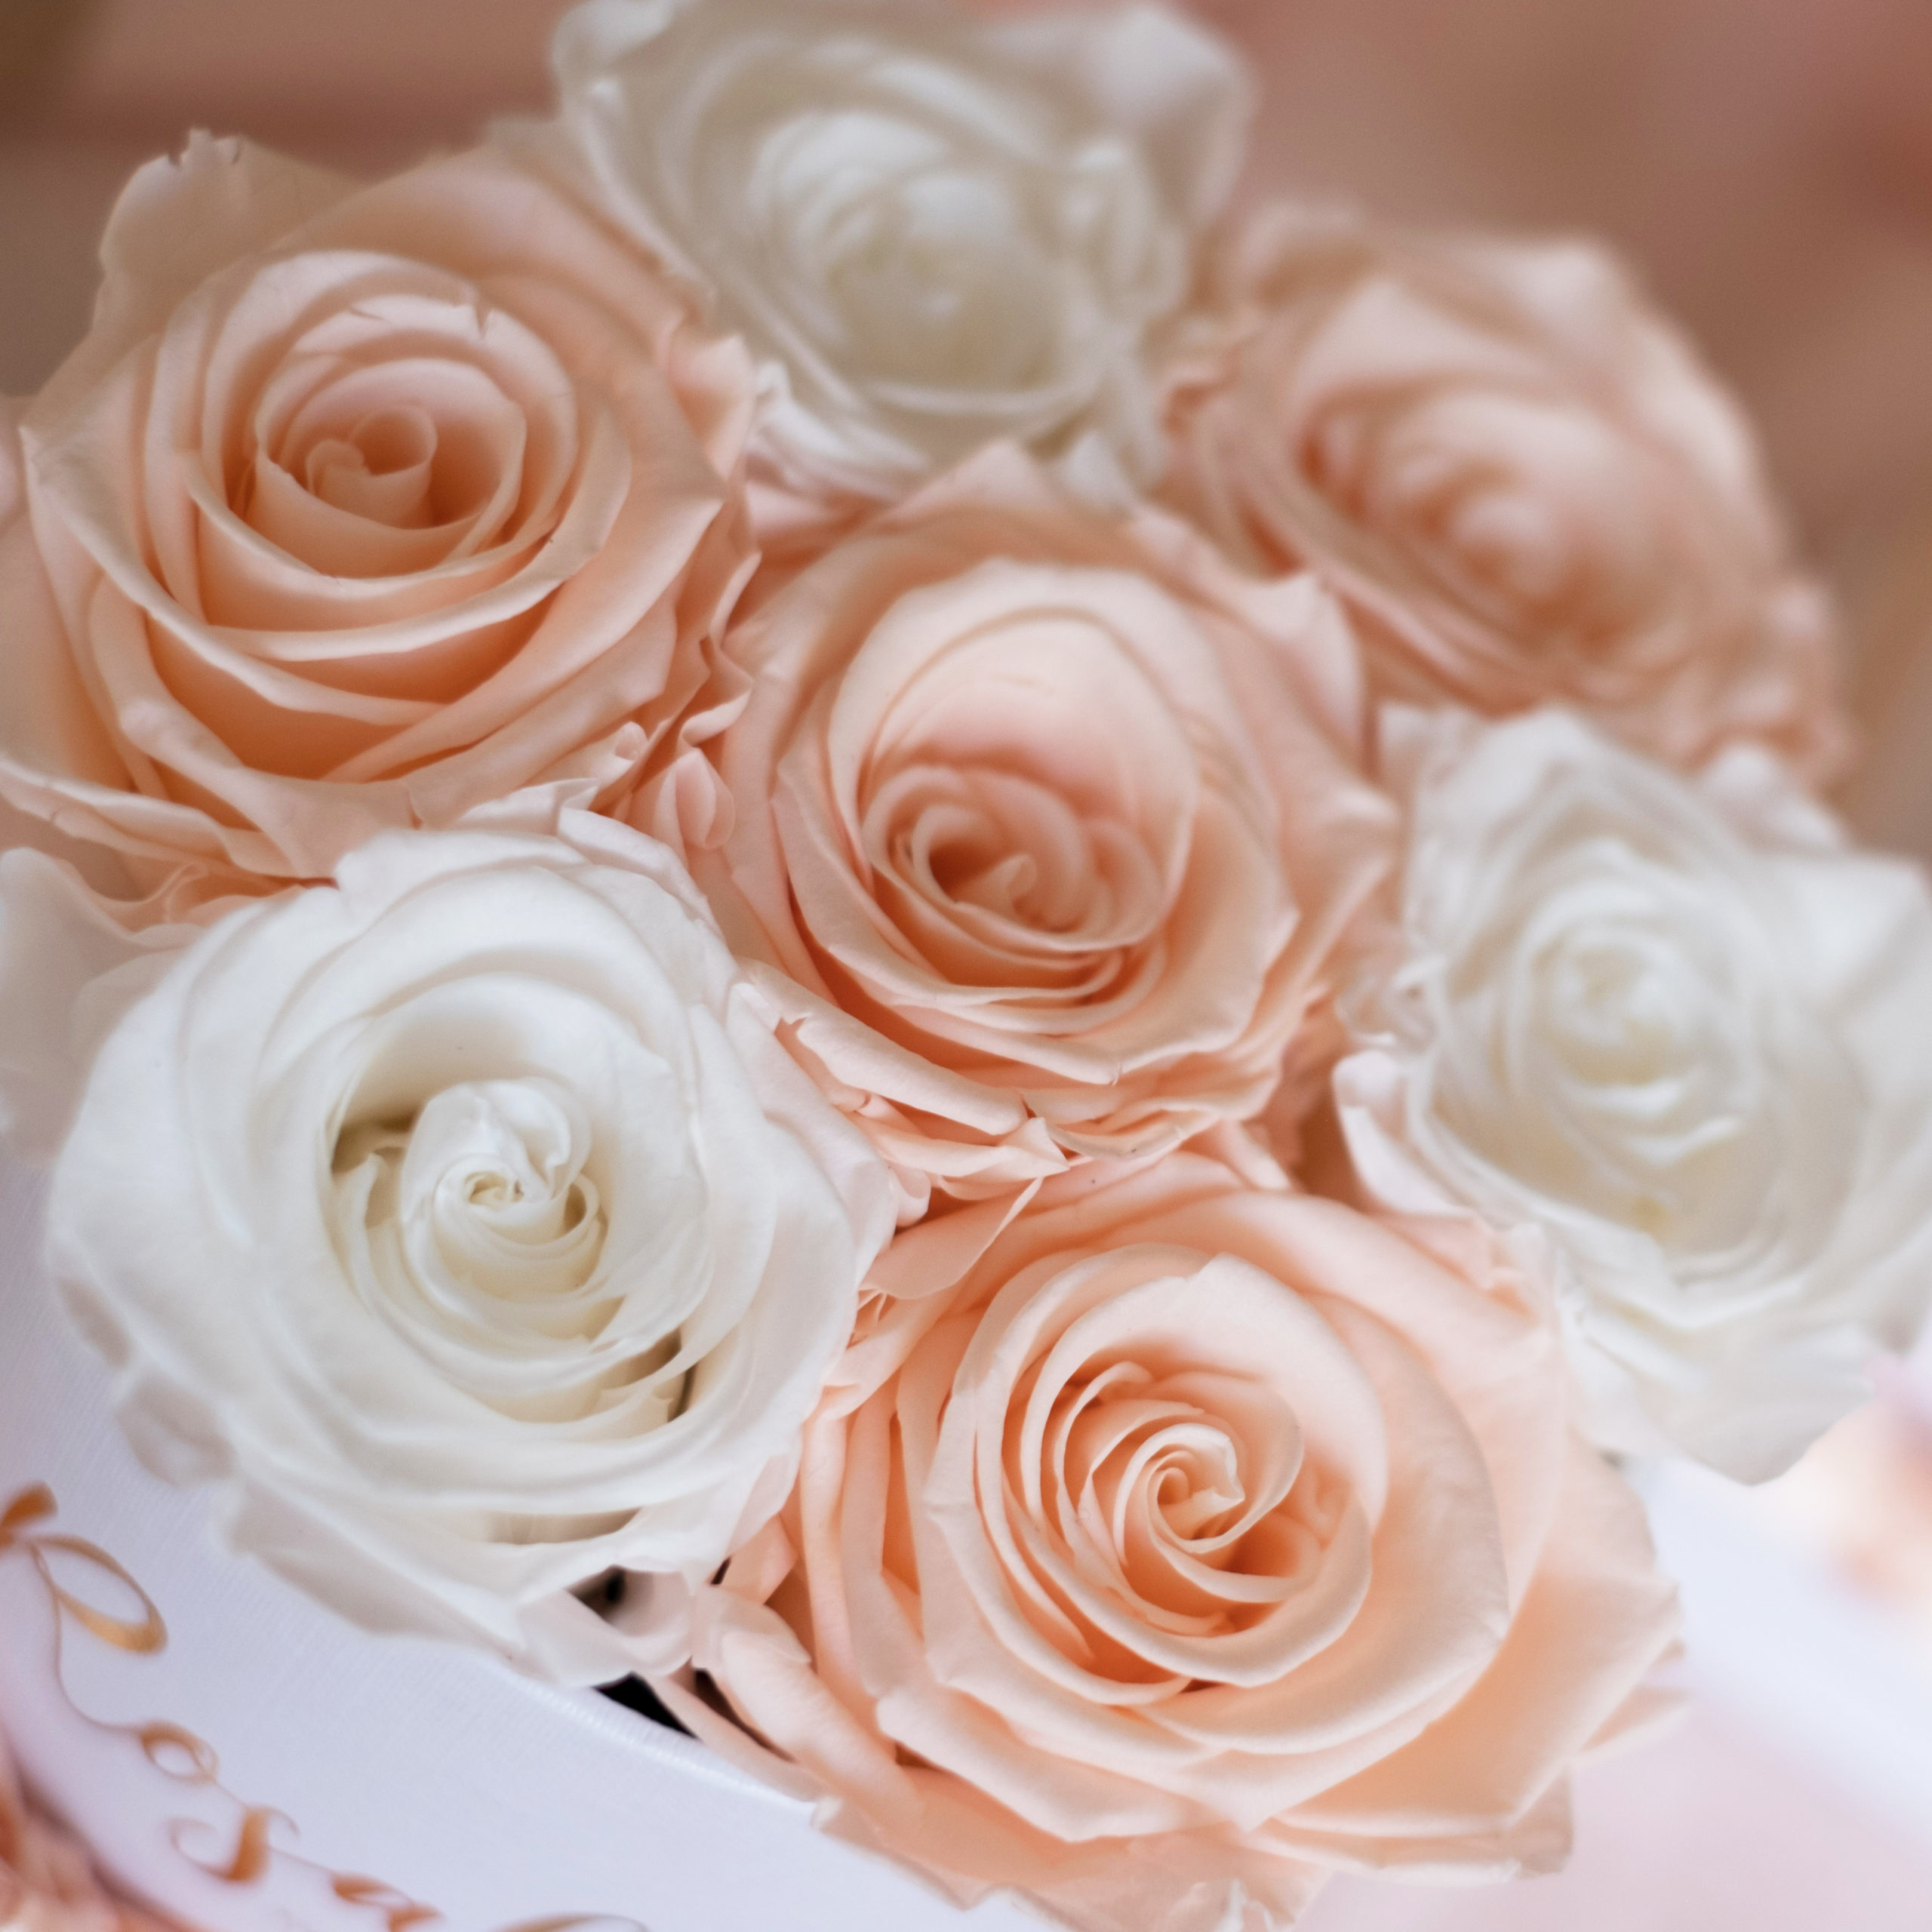 scatola di rose stabilizzate vista dall'alto con 4 rose di colore porcellana e 3 rose bianche